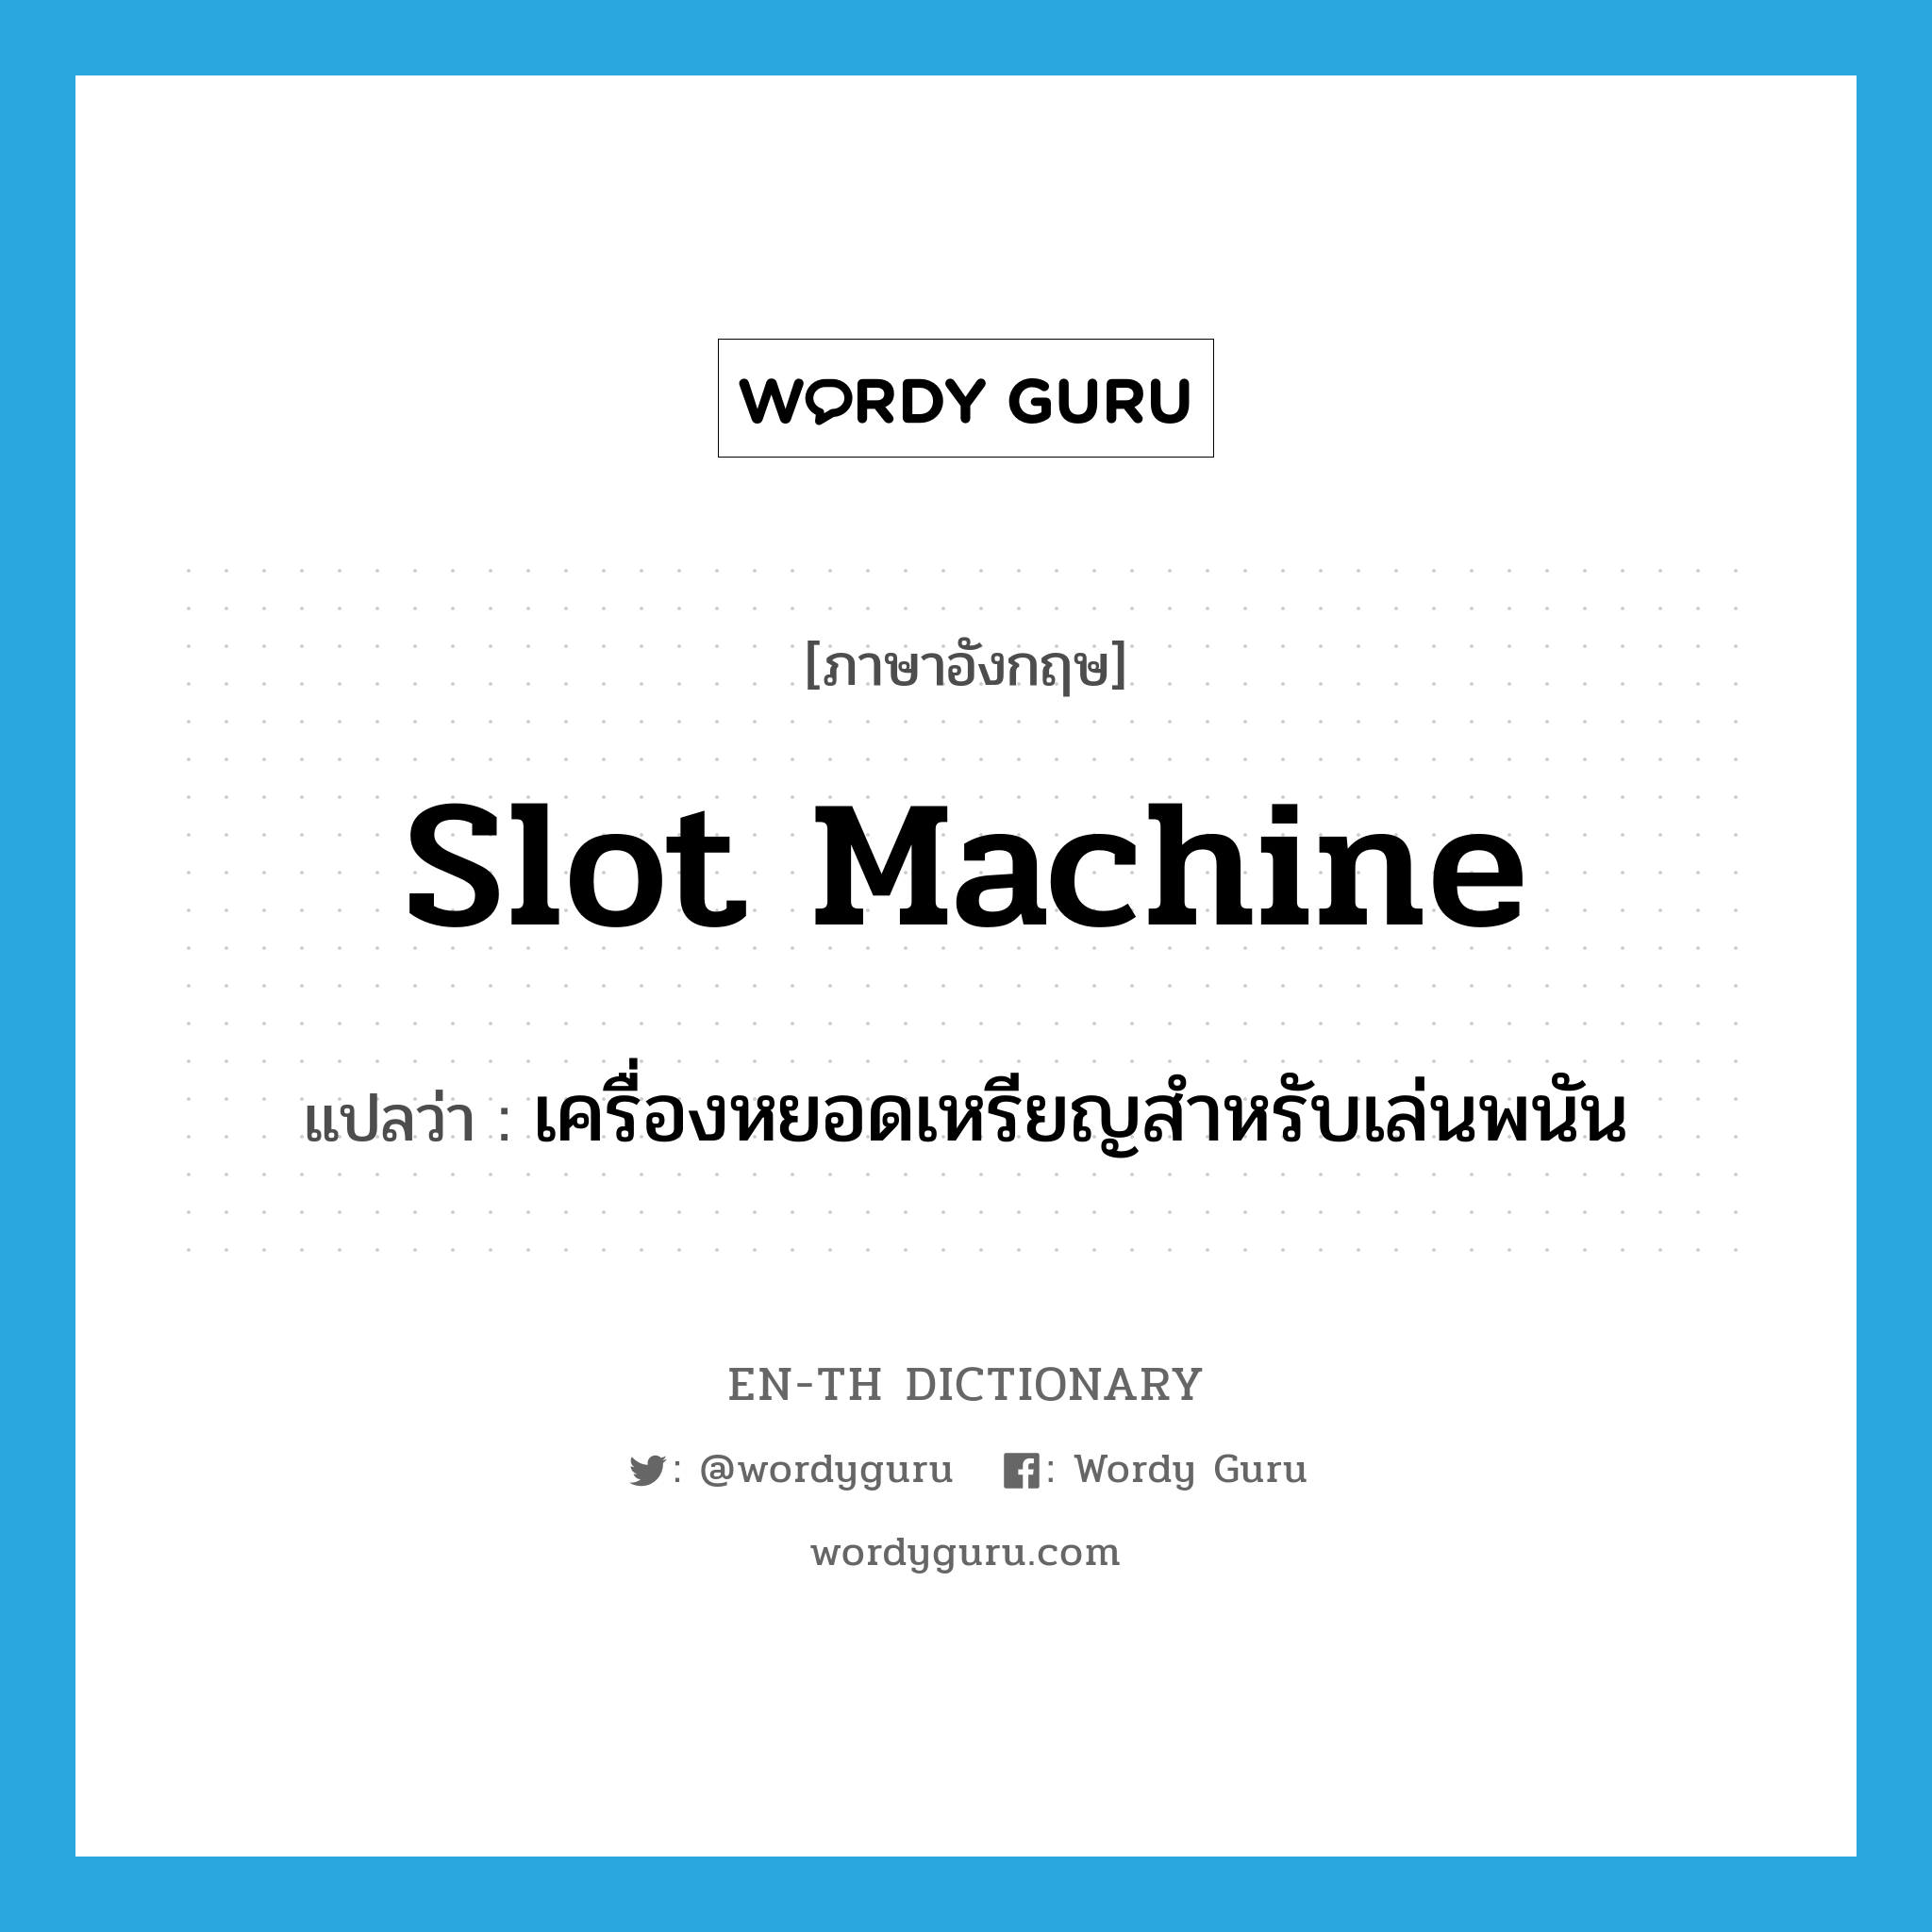 slot machine แปลว่า?, คำศัพท์ภาษาอังกฤษ slot machine แปลว่า เครื่องหยอดเหรียญสำหรับเล่นพนัน ประเภท N หมวด N